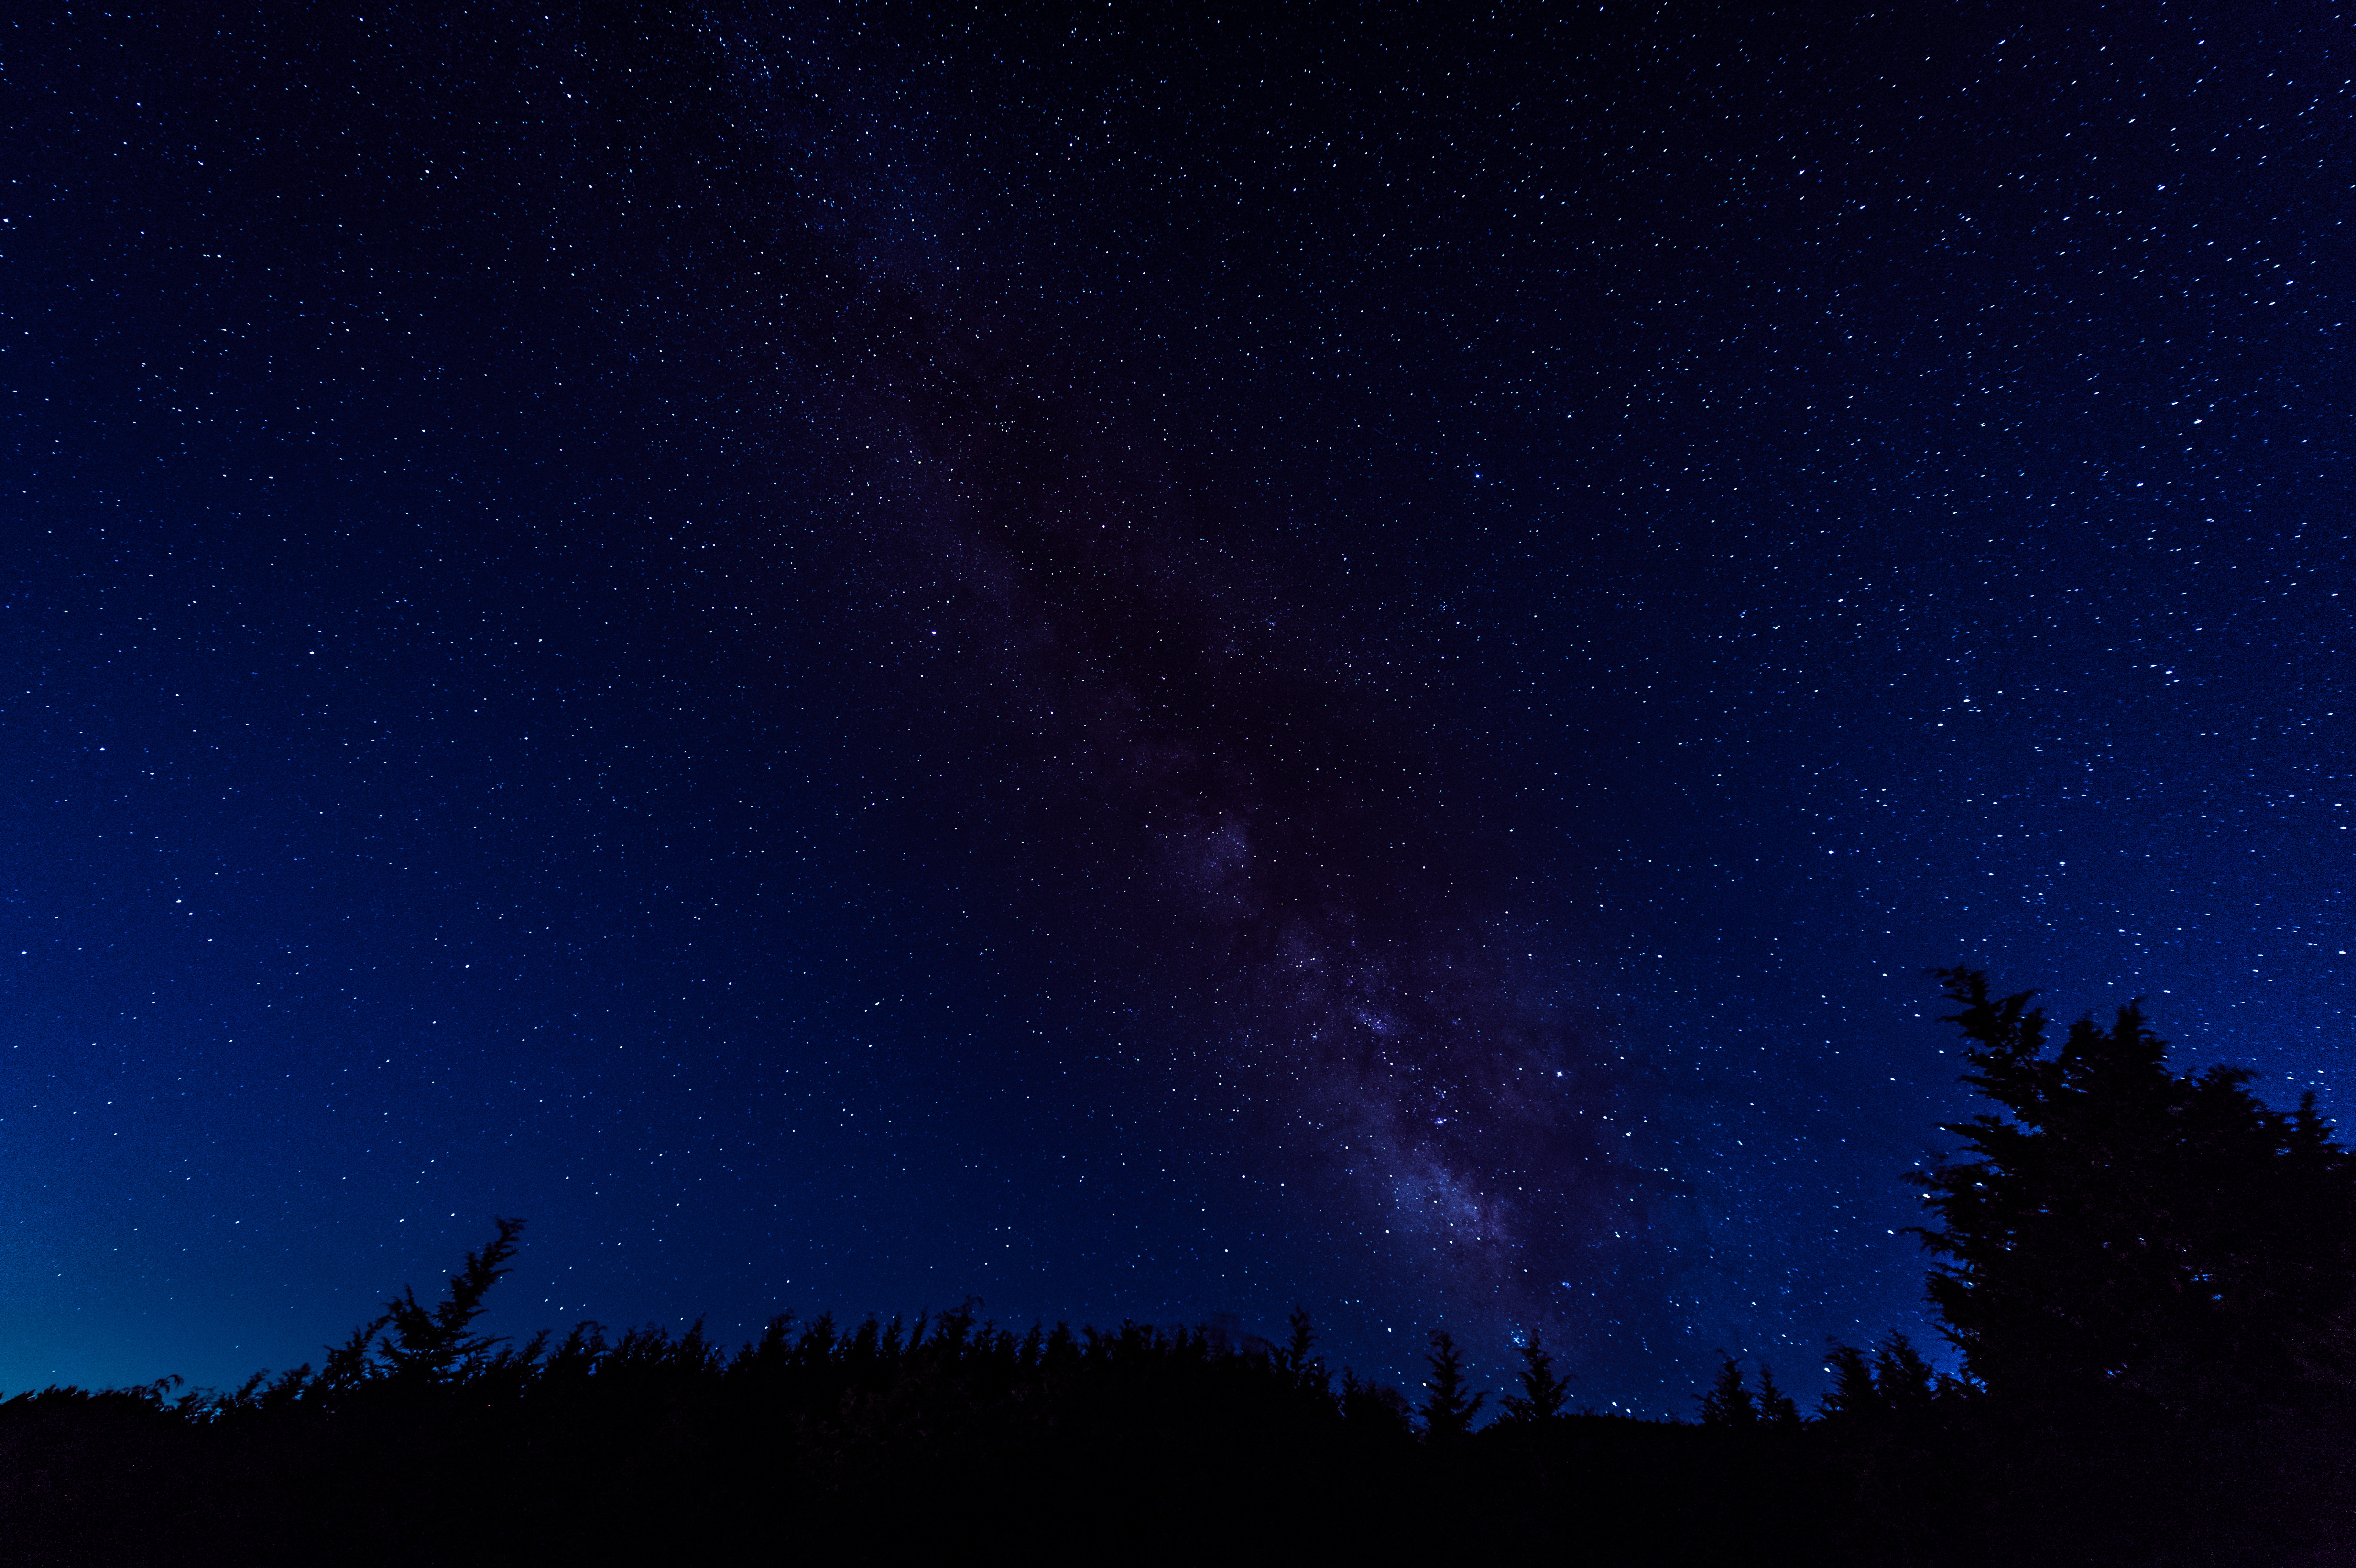 夜空いっぱいの星空 鏡野町笠菅峠 無料の写真素材はフリー素材の